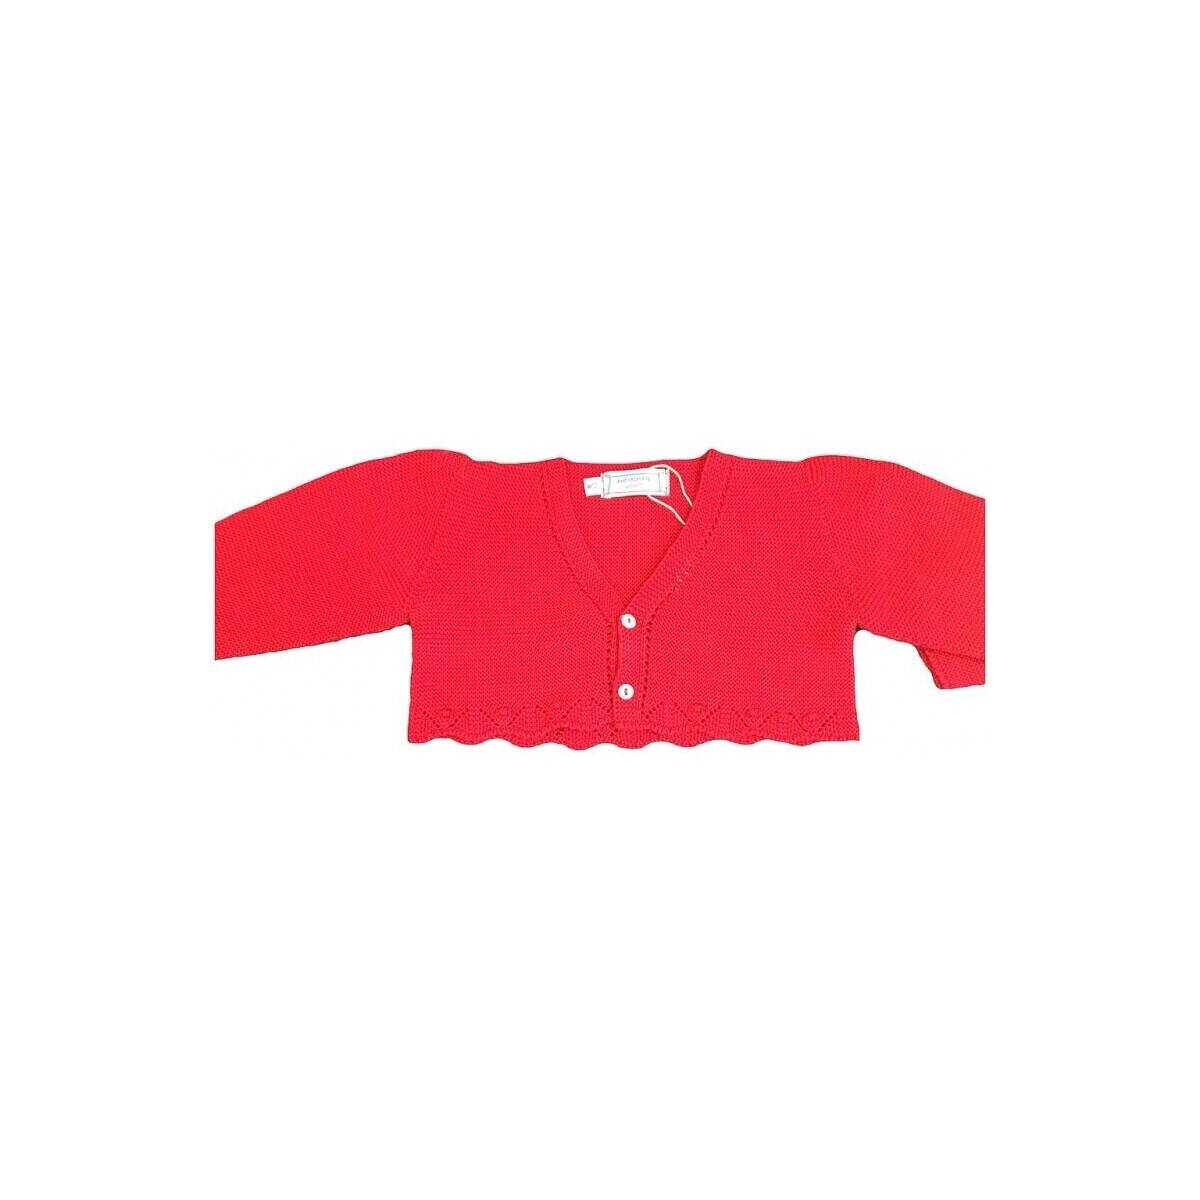 Υφασμάτινα Παλτό P. Baby 23824-1 Red